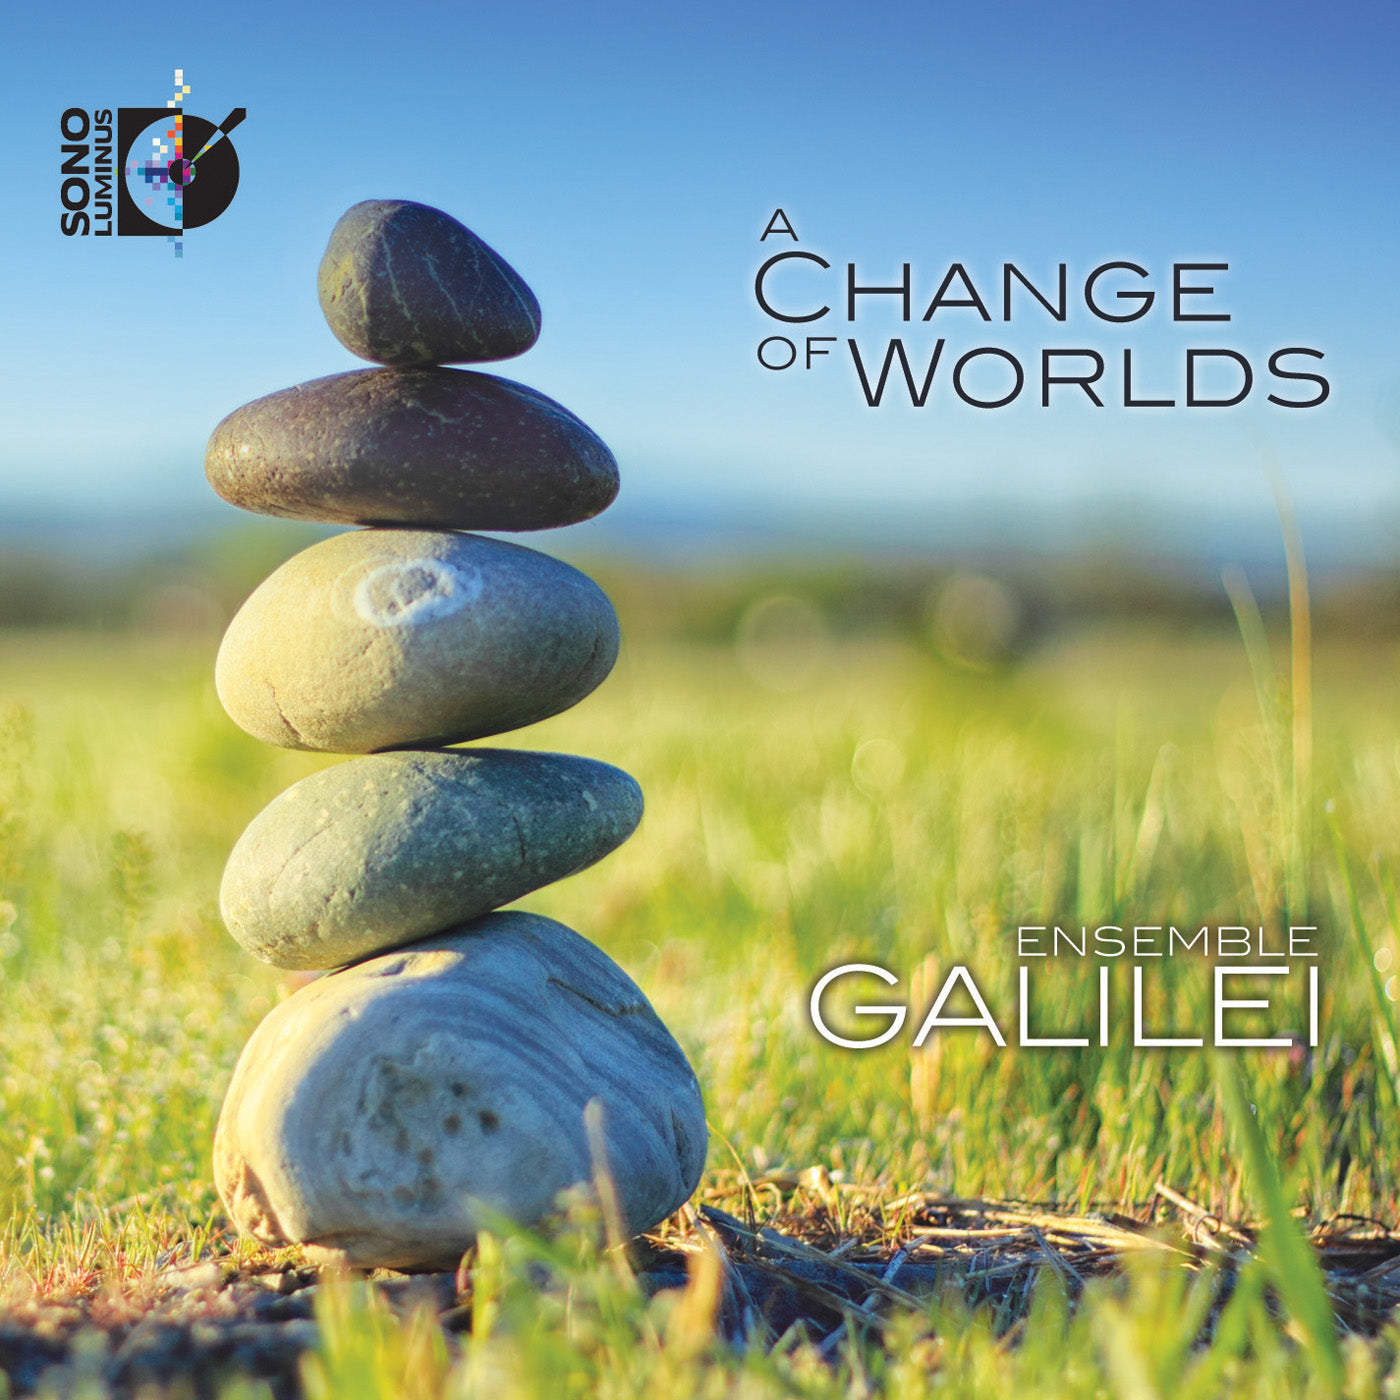 A Change of Worlds / Galilei